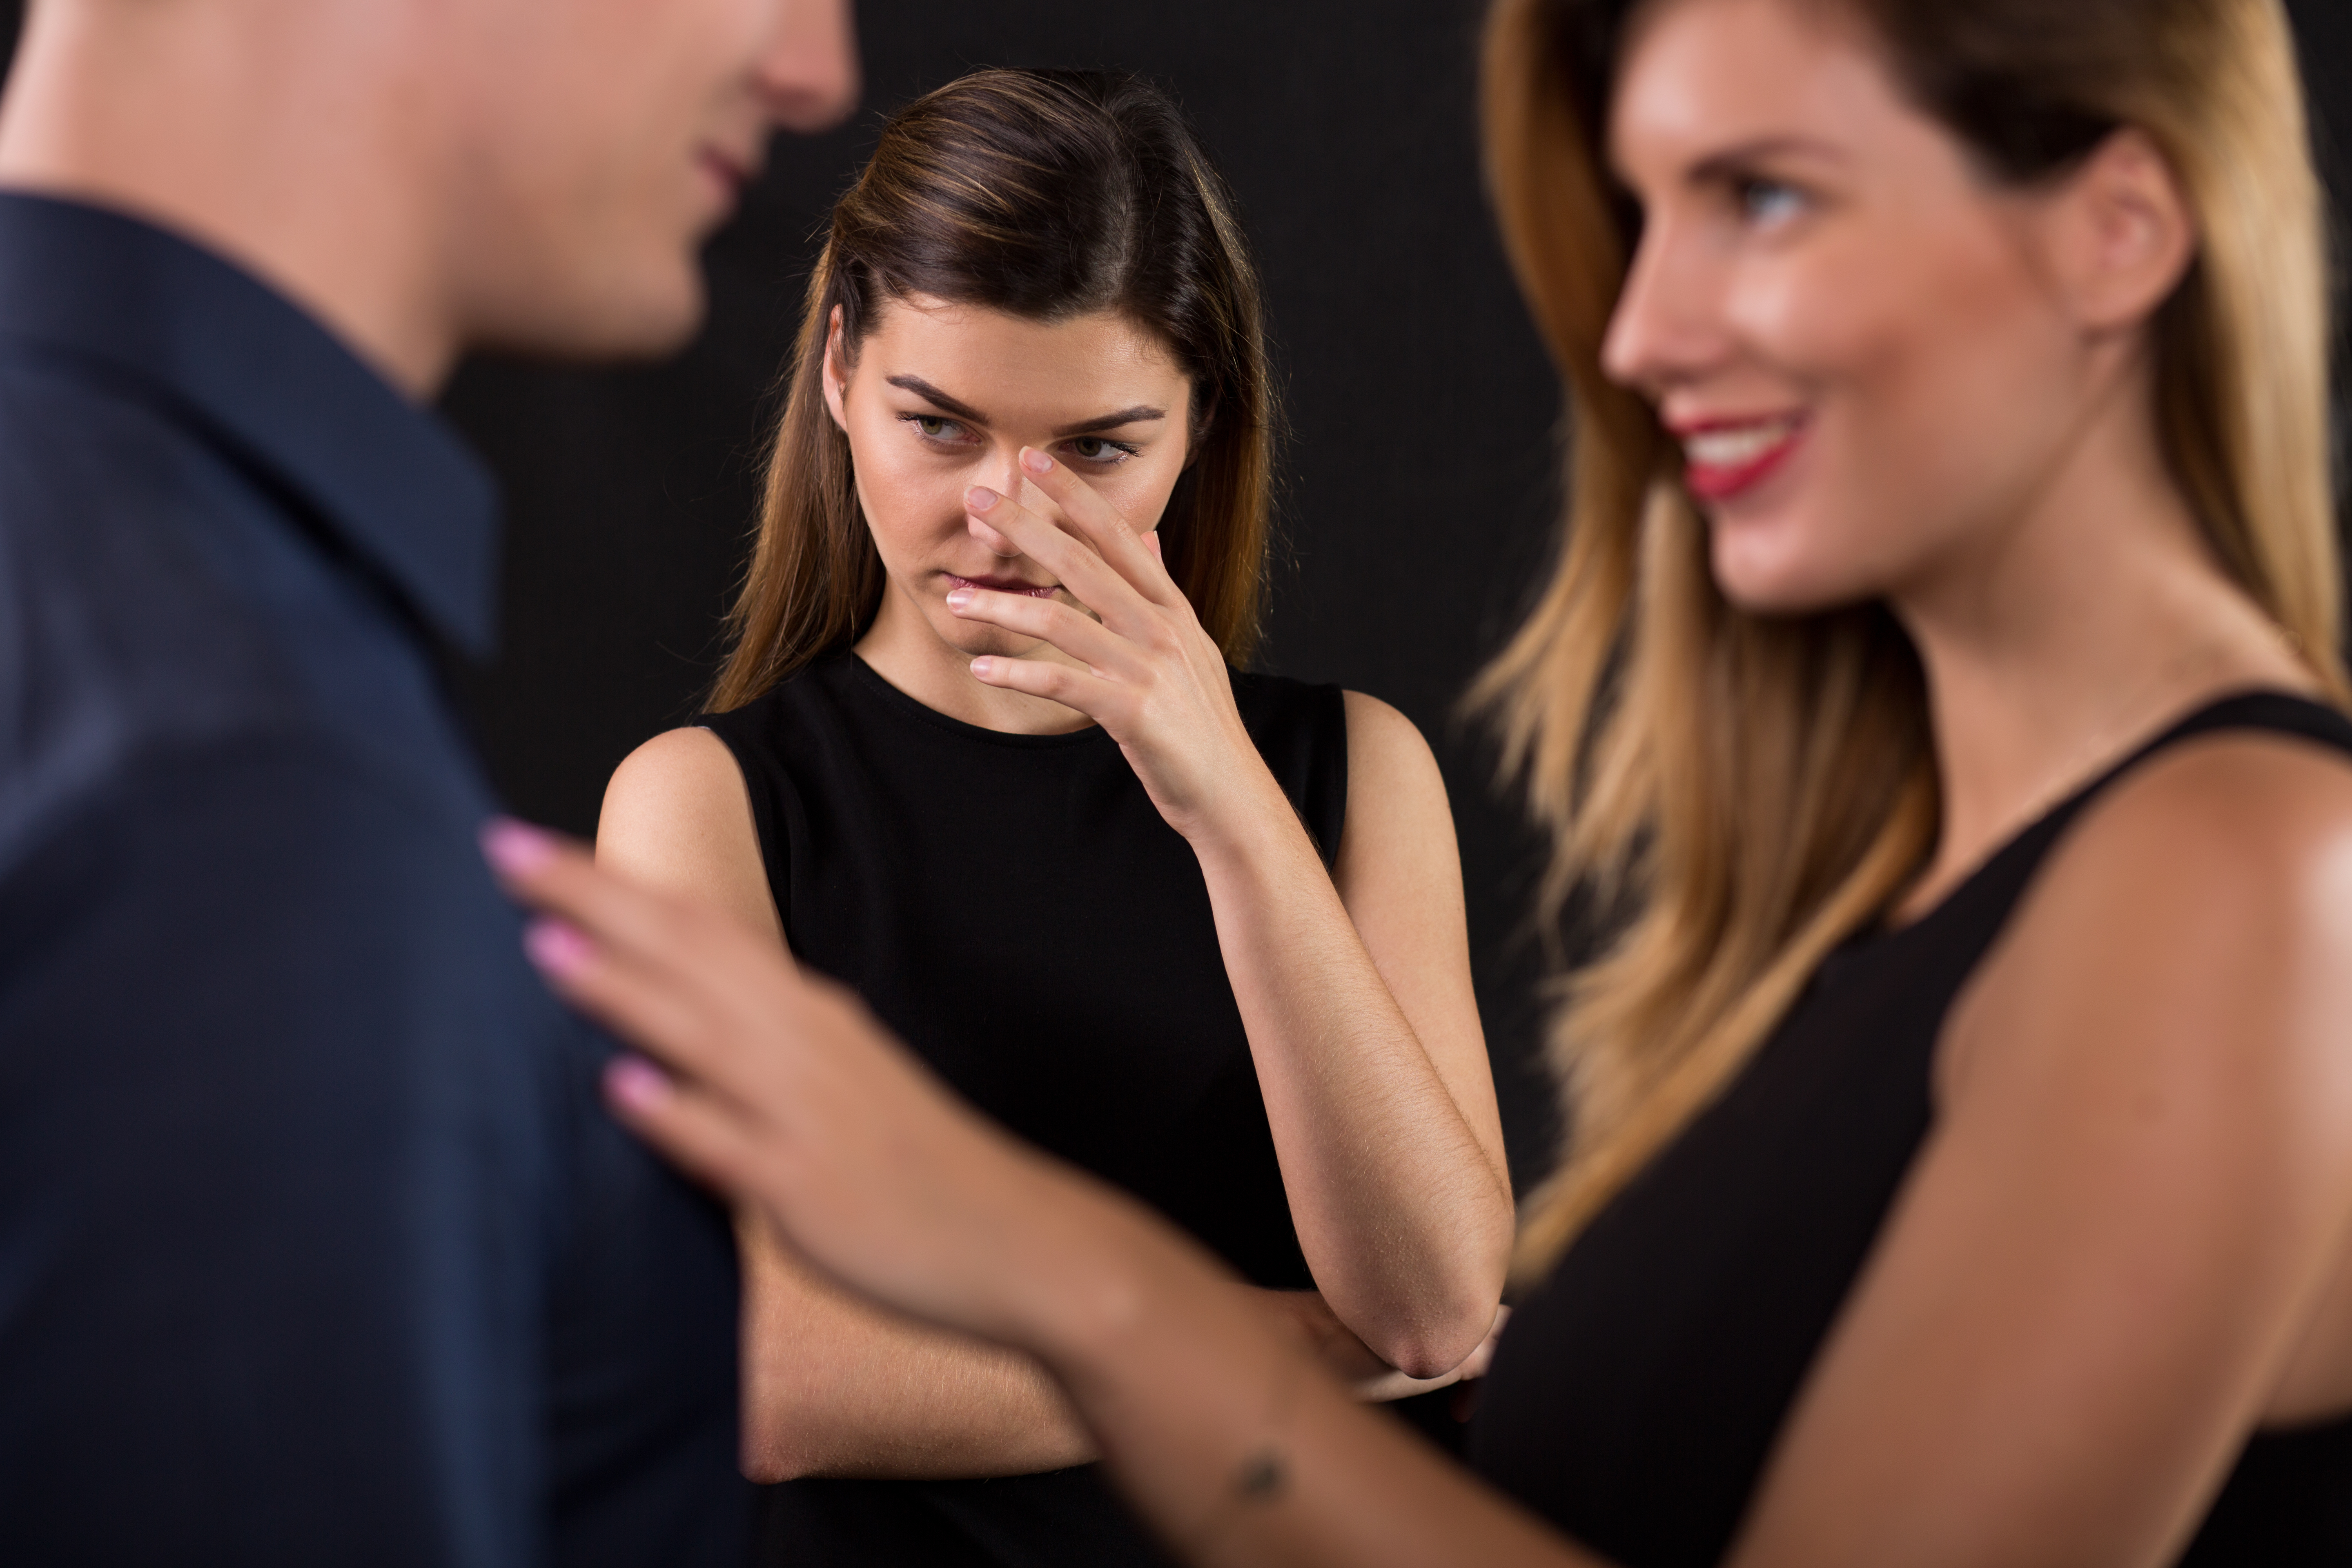 Un mari qui trompe sa femme avec une autre femme | Source : Shutterstock